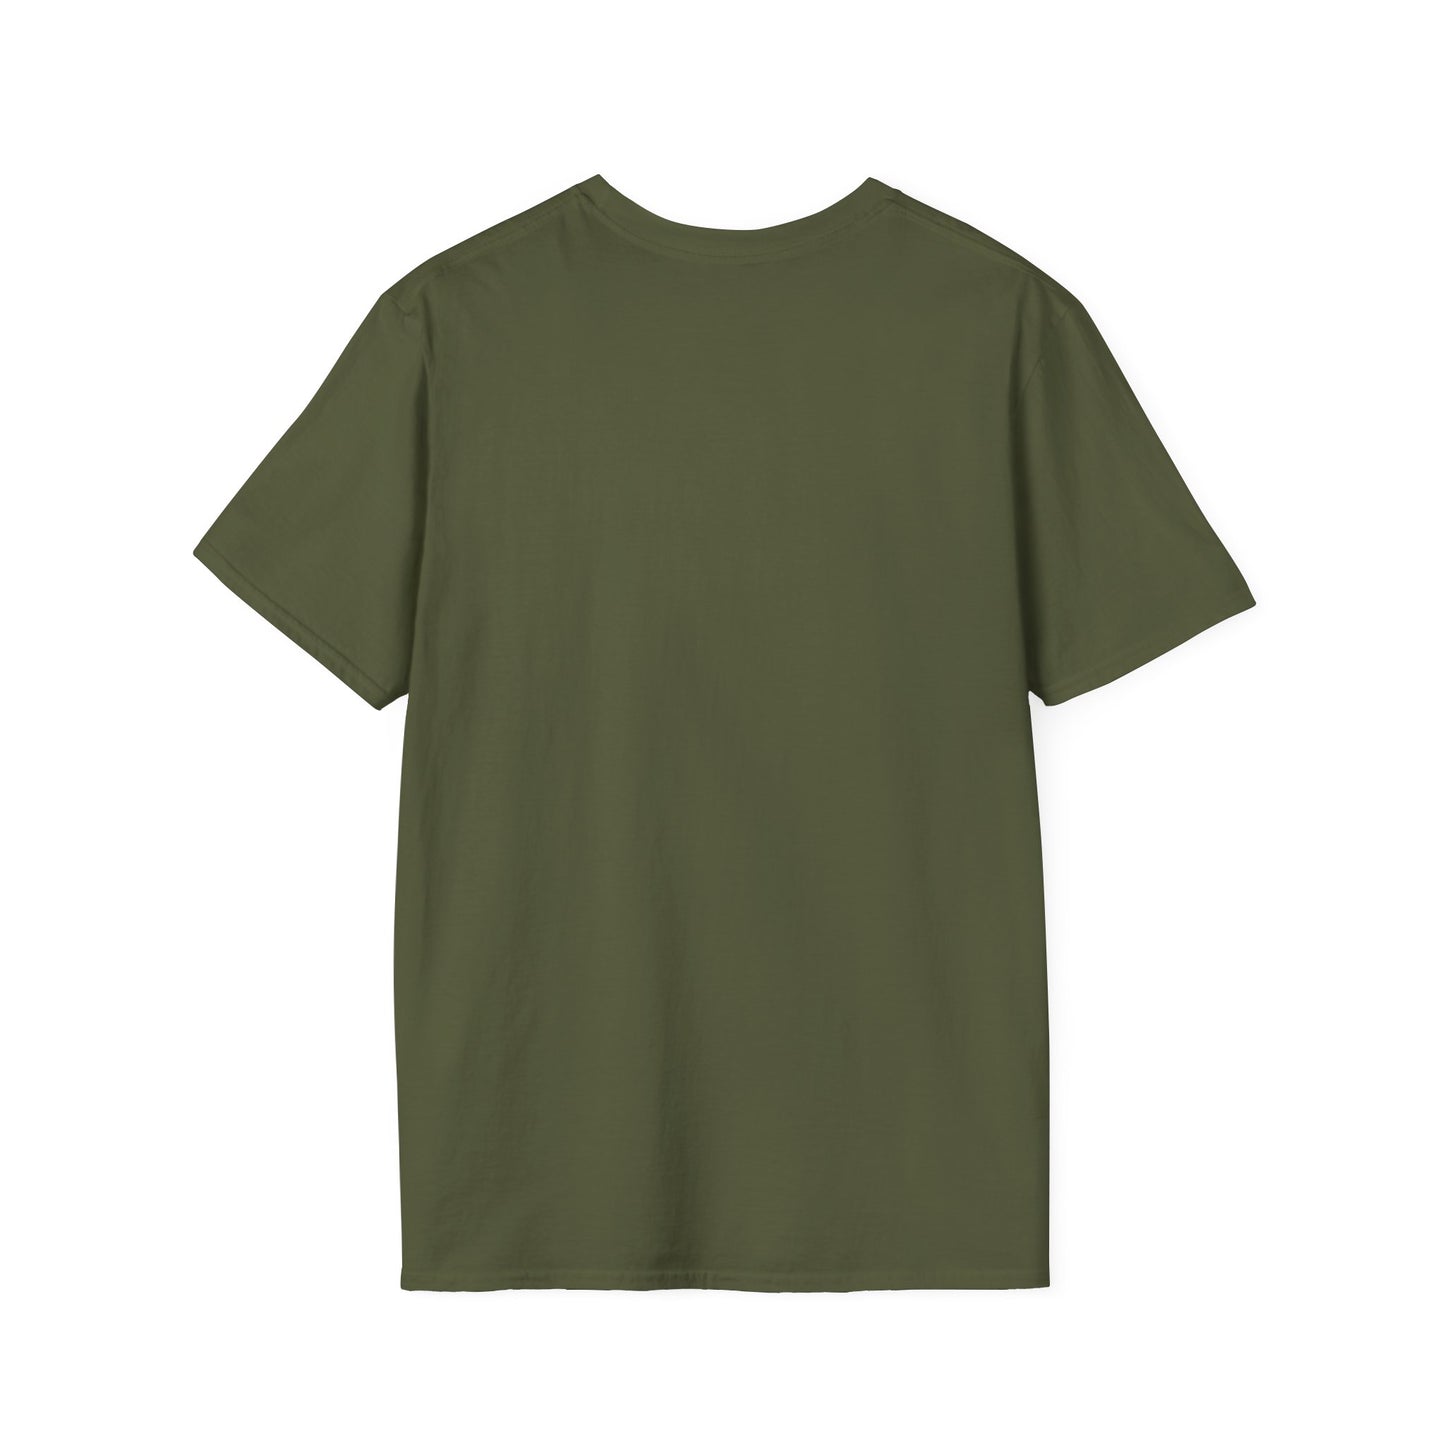 TG-5 Unisex Softstyle T-Shirt